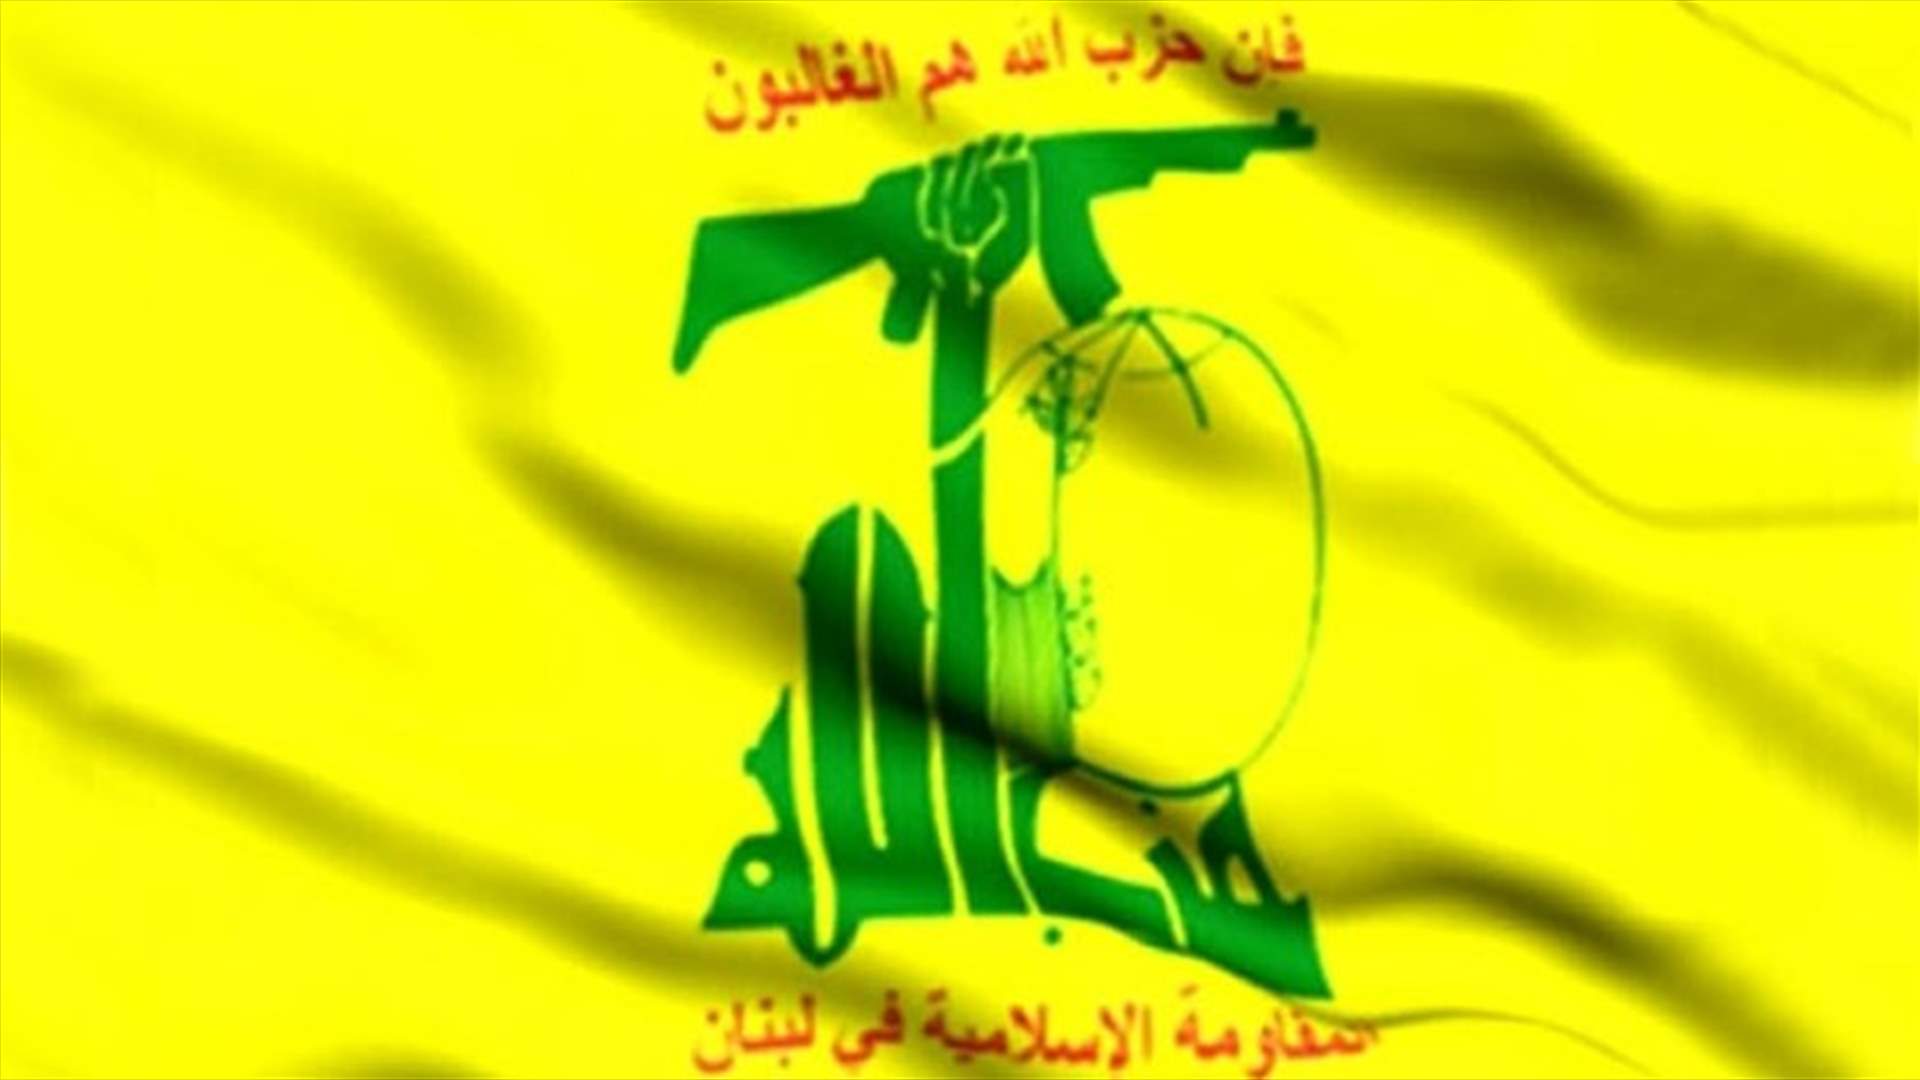 كيف علق حزب الله على اعدام 3 شبان في البحرين؟